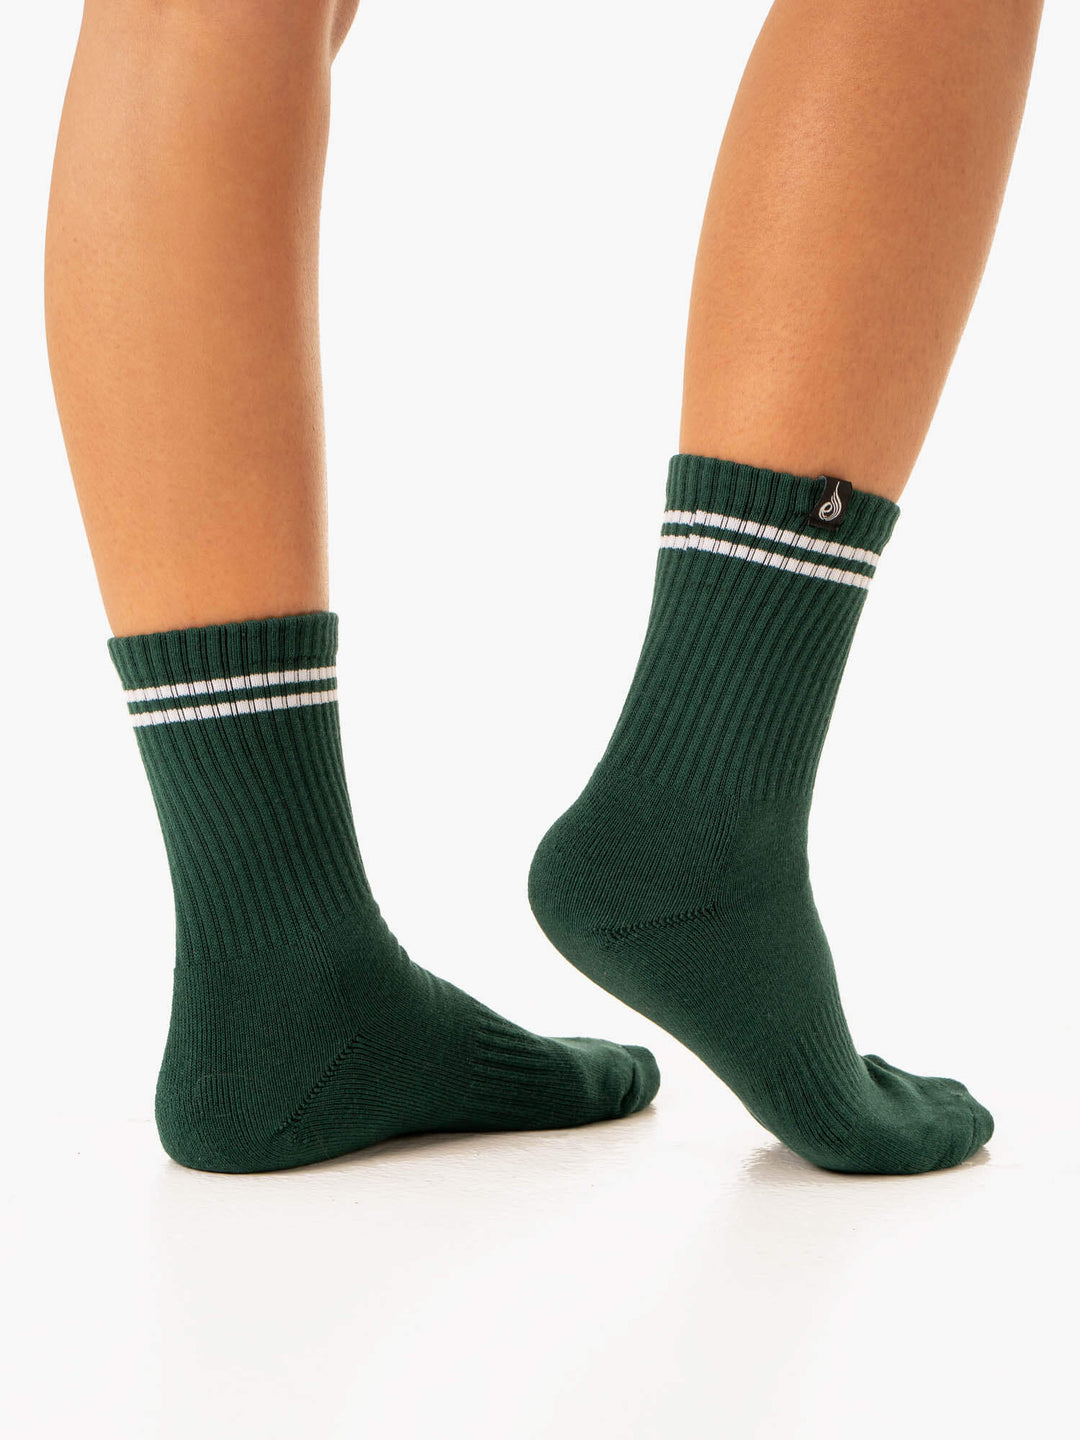 Stripe Crew Socks - White/Green Accessories Ryderwear 